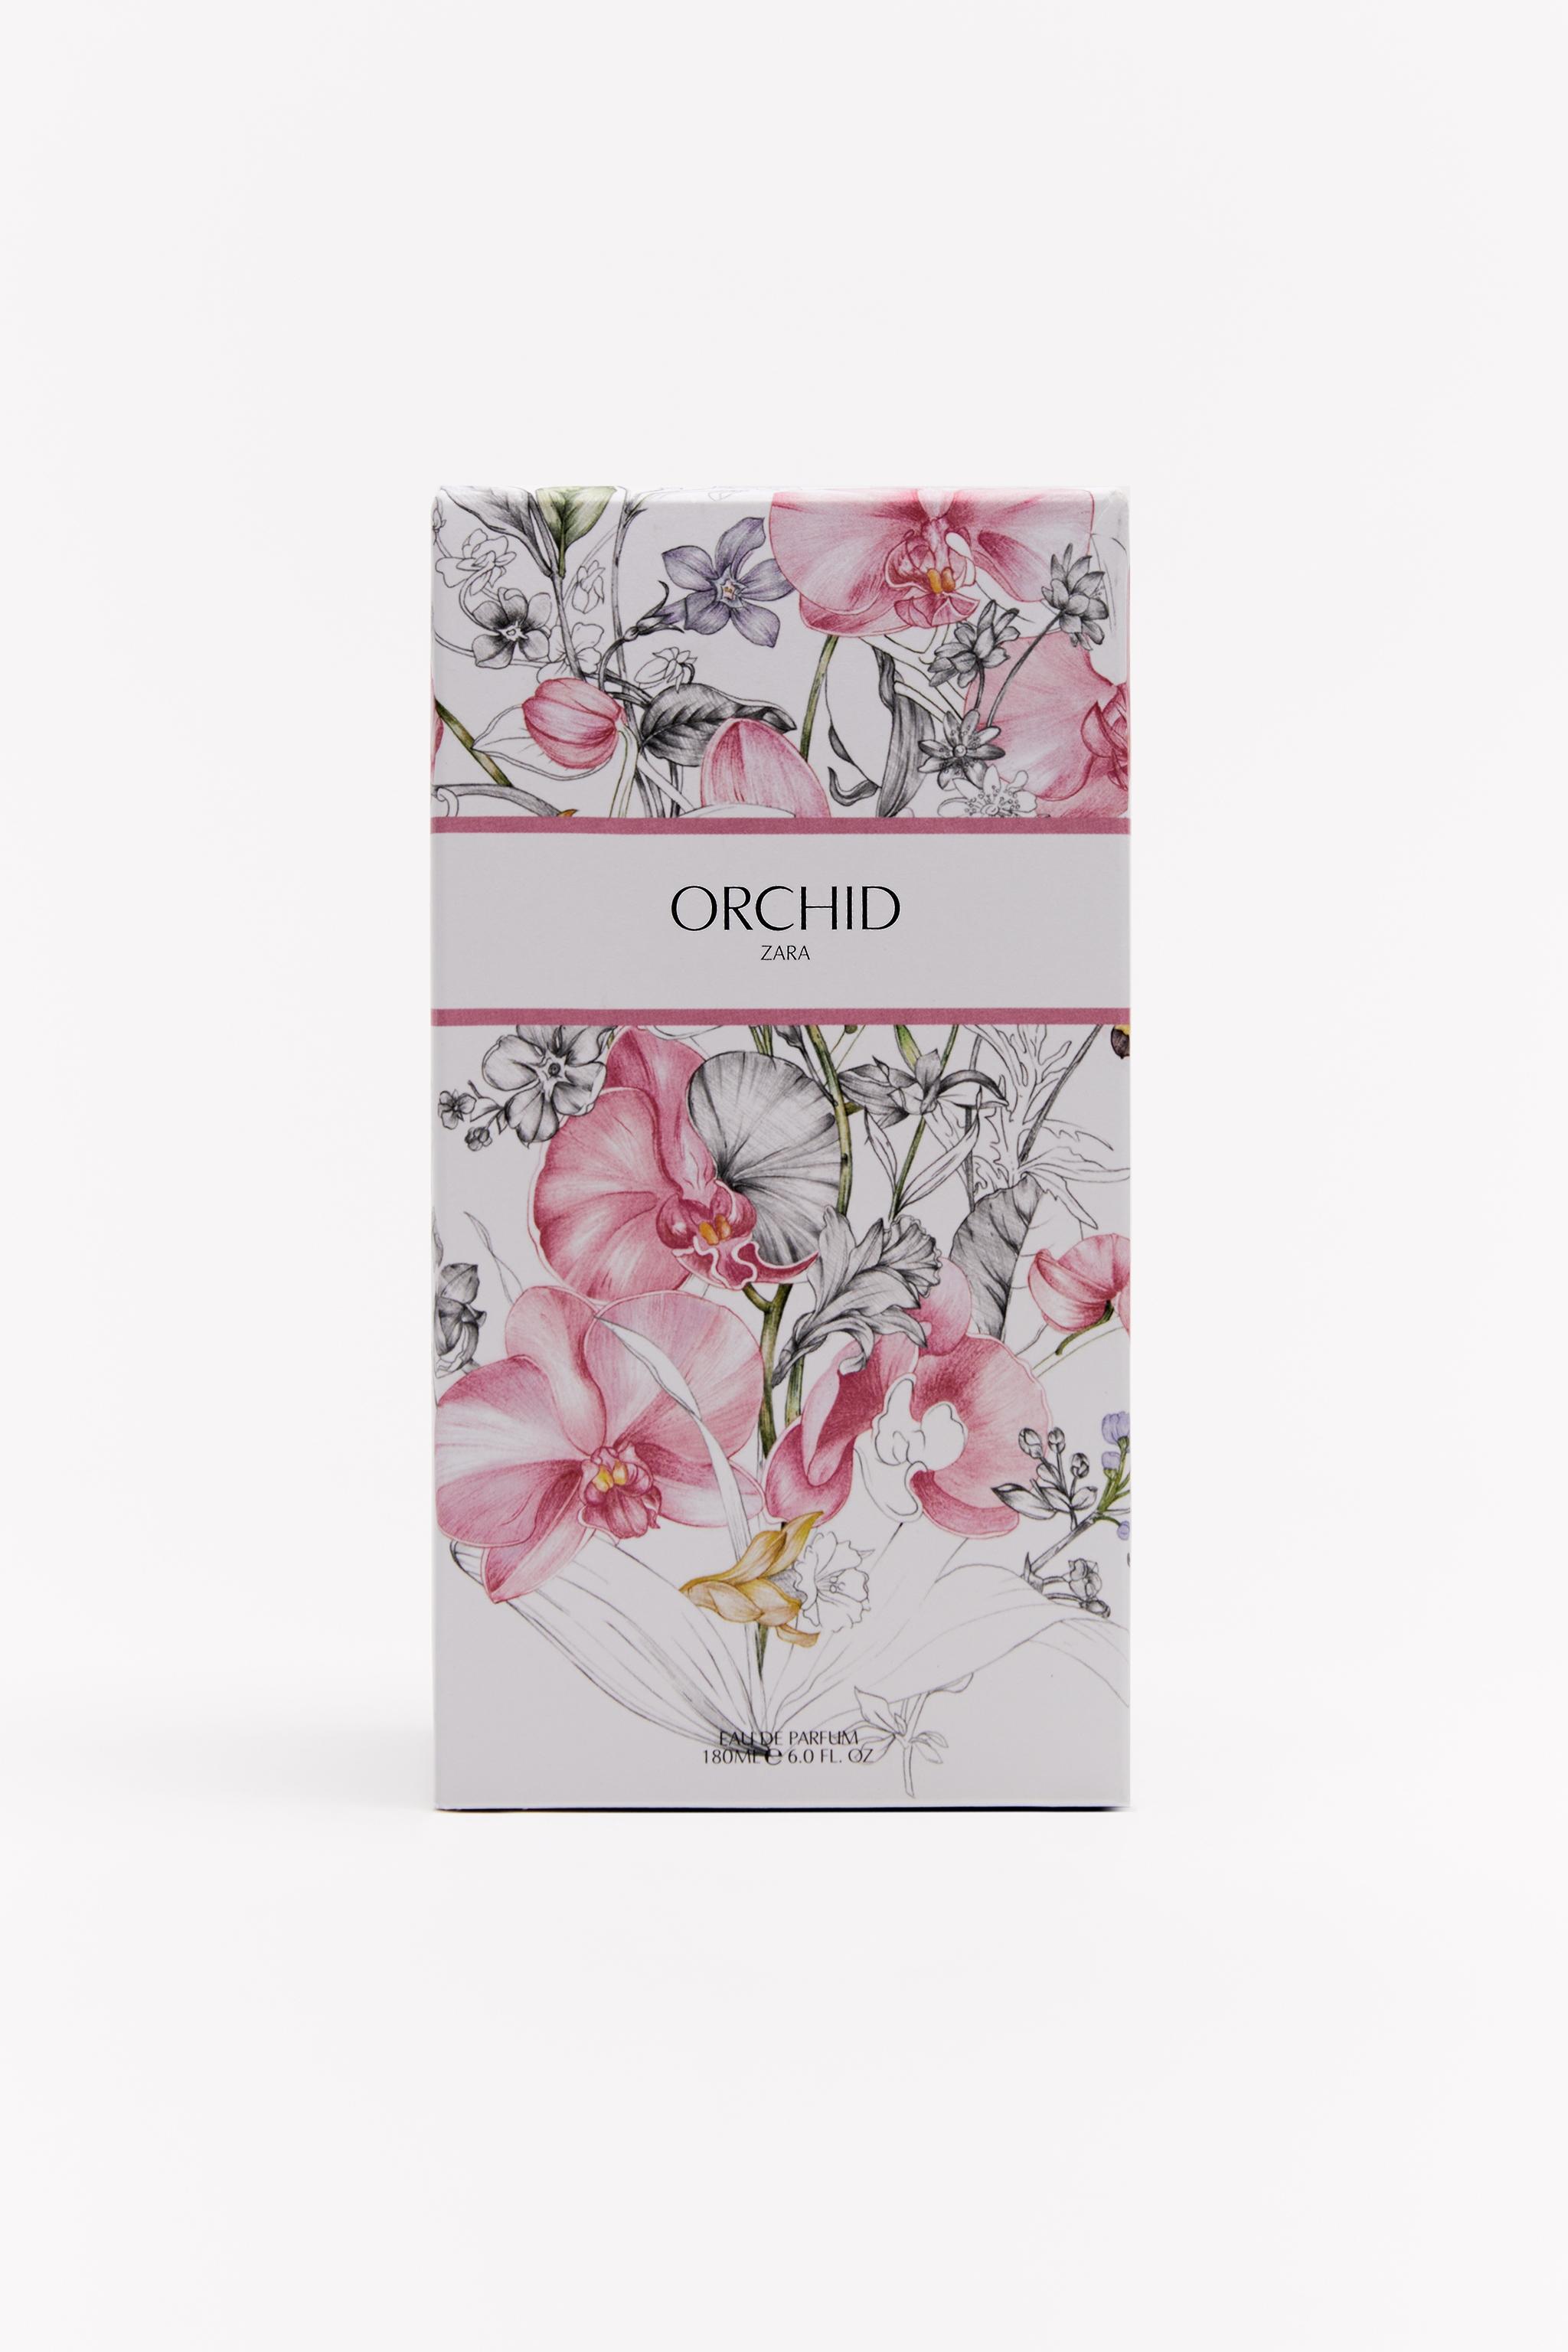 Nuevo ZARA Orchid EAU DE Parfum Mujer 100 ML